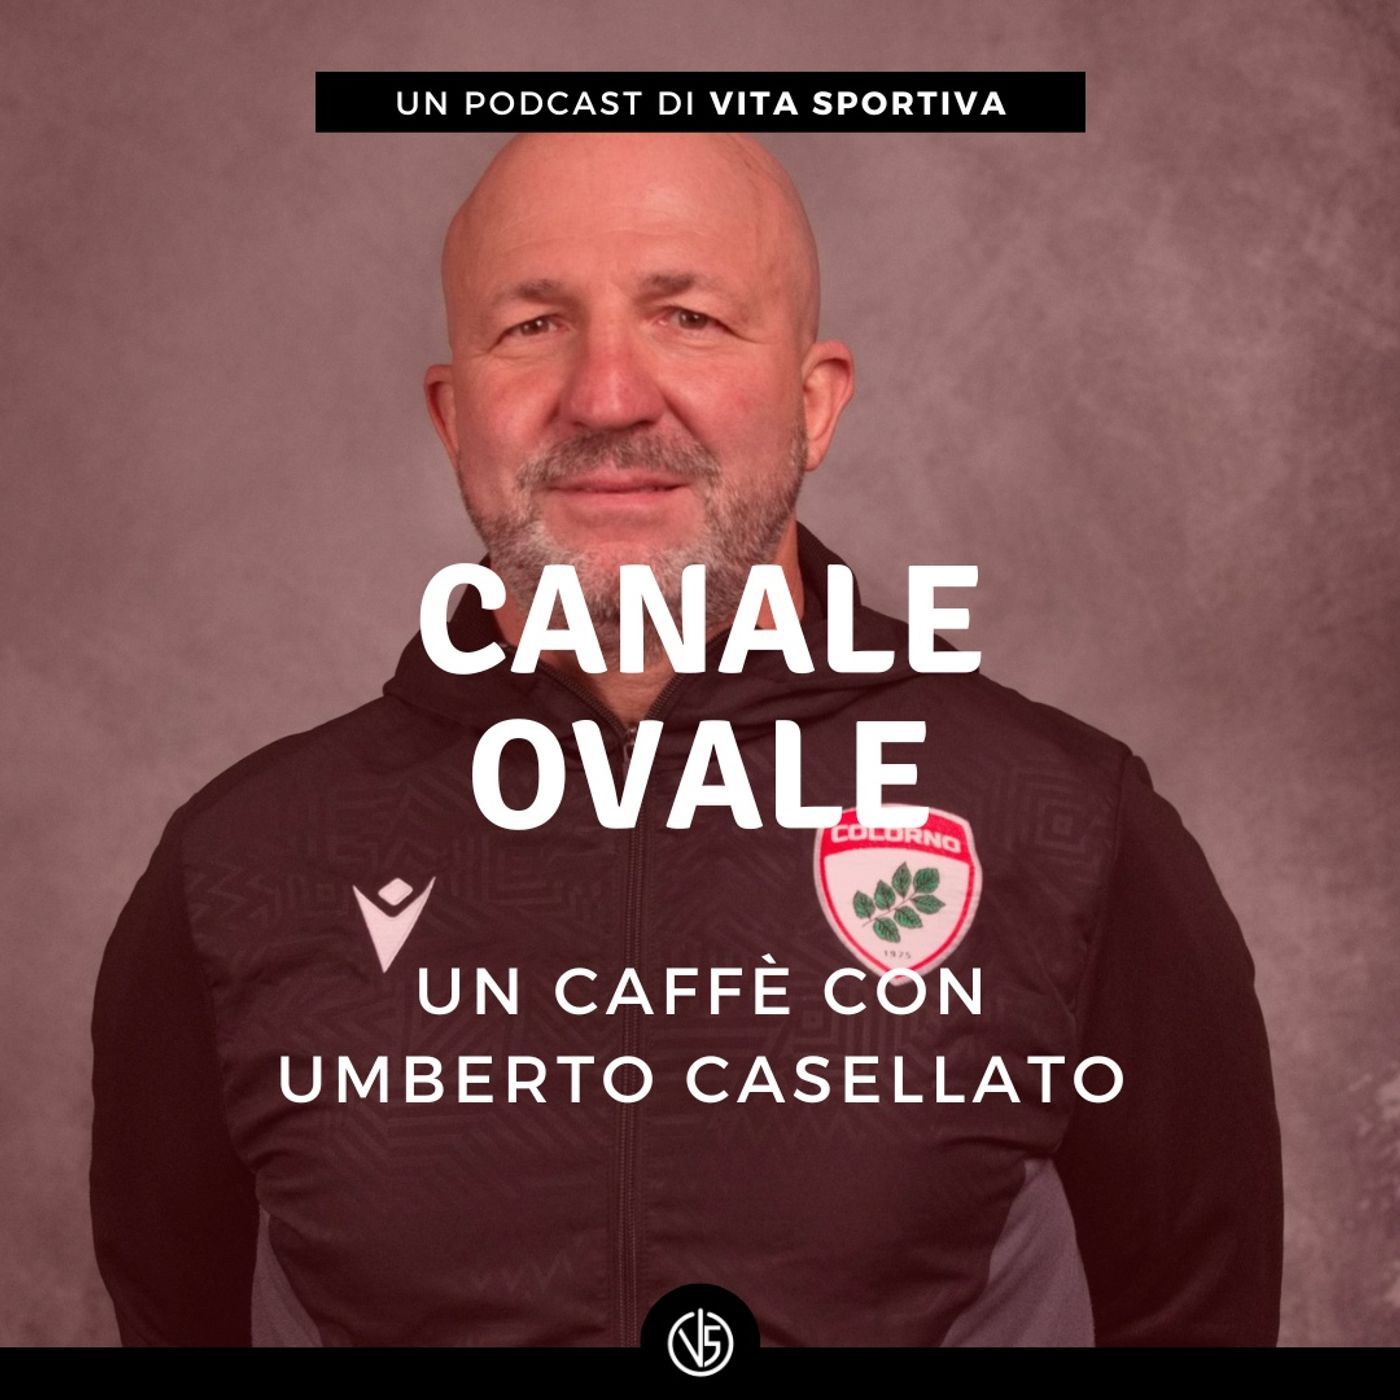 Un caffè con Umberto Casellato